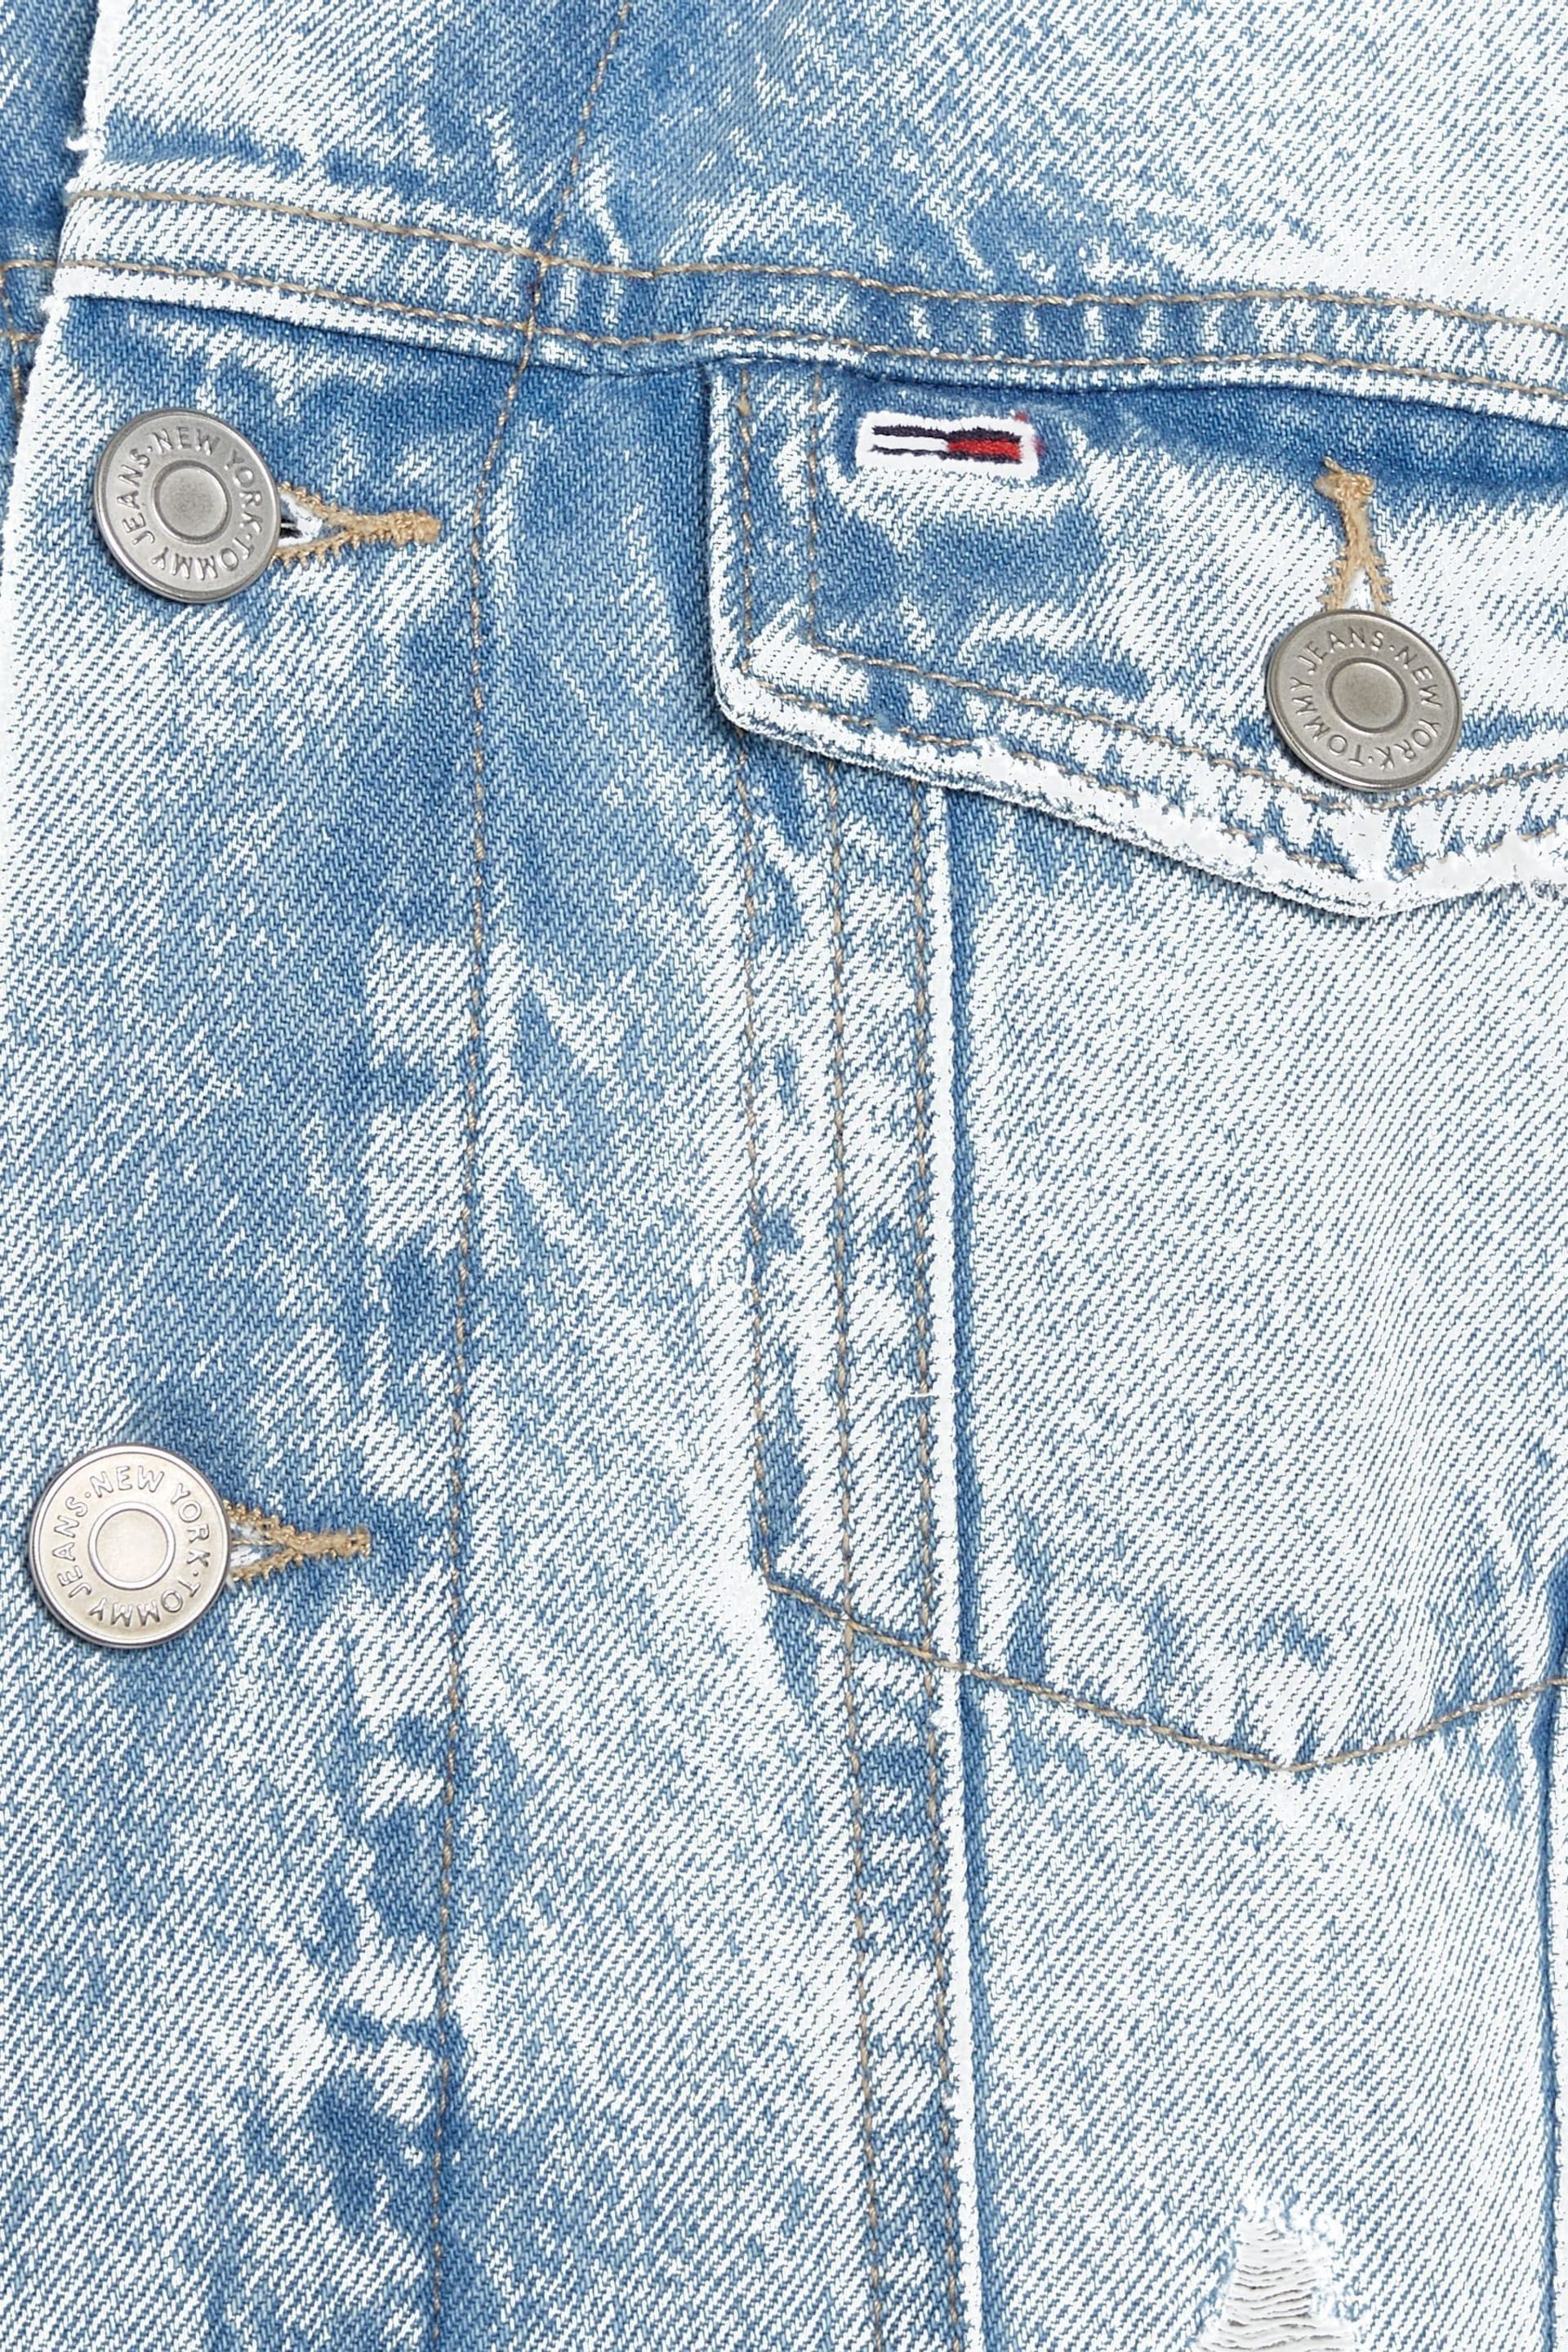 Tommy Jeans Mom Fit Denim Blue Jacket - Image 6 of 6